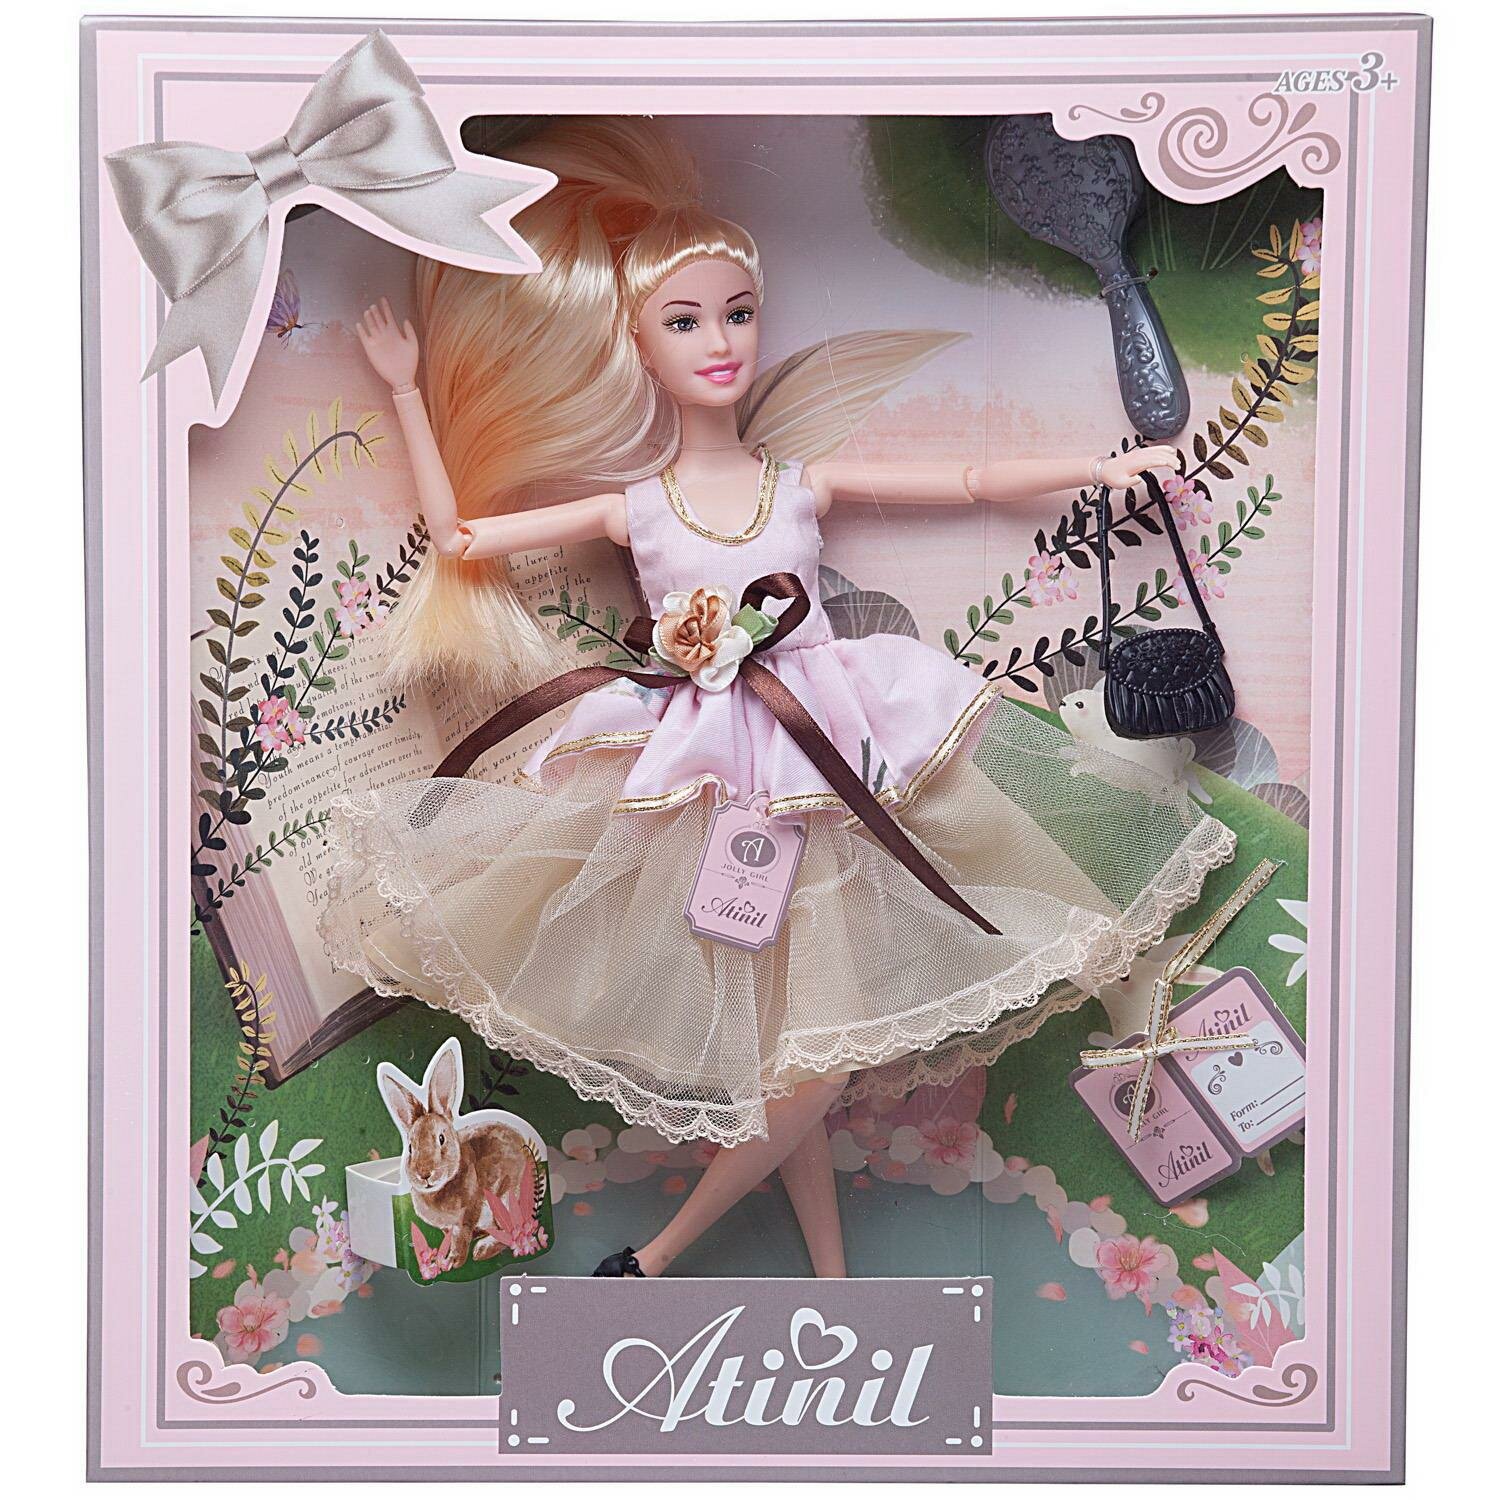 Кукла Junfa Atinil (Атинил) Весенняя свежесть в платье (розовый с цветами верх и воздушная юбка) с сумочкой и расческой, 28см WJ-21537/модель2